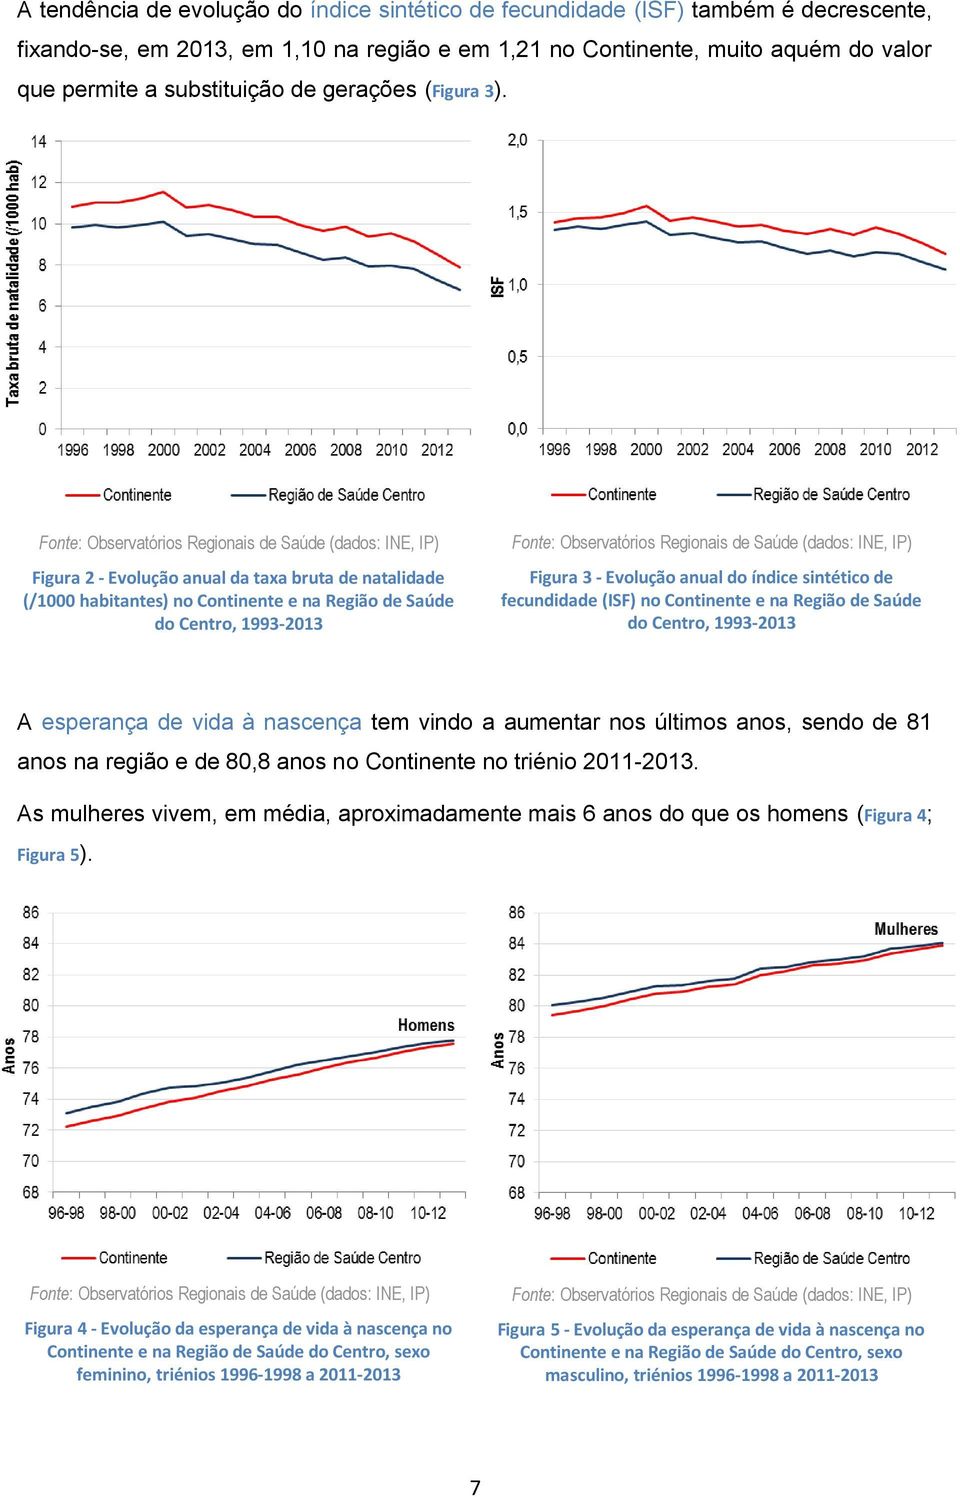 Fonte: Observatórios Regionais de Saúde (dados: INE, IP) Figura 2 - Evolução anual da taxa bruta de natalidade (/1000 habitantes) no Continente e na Região de Saúde do Centro, 1993-2013 Fonte: